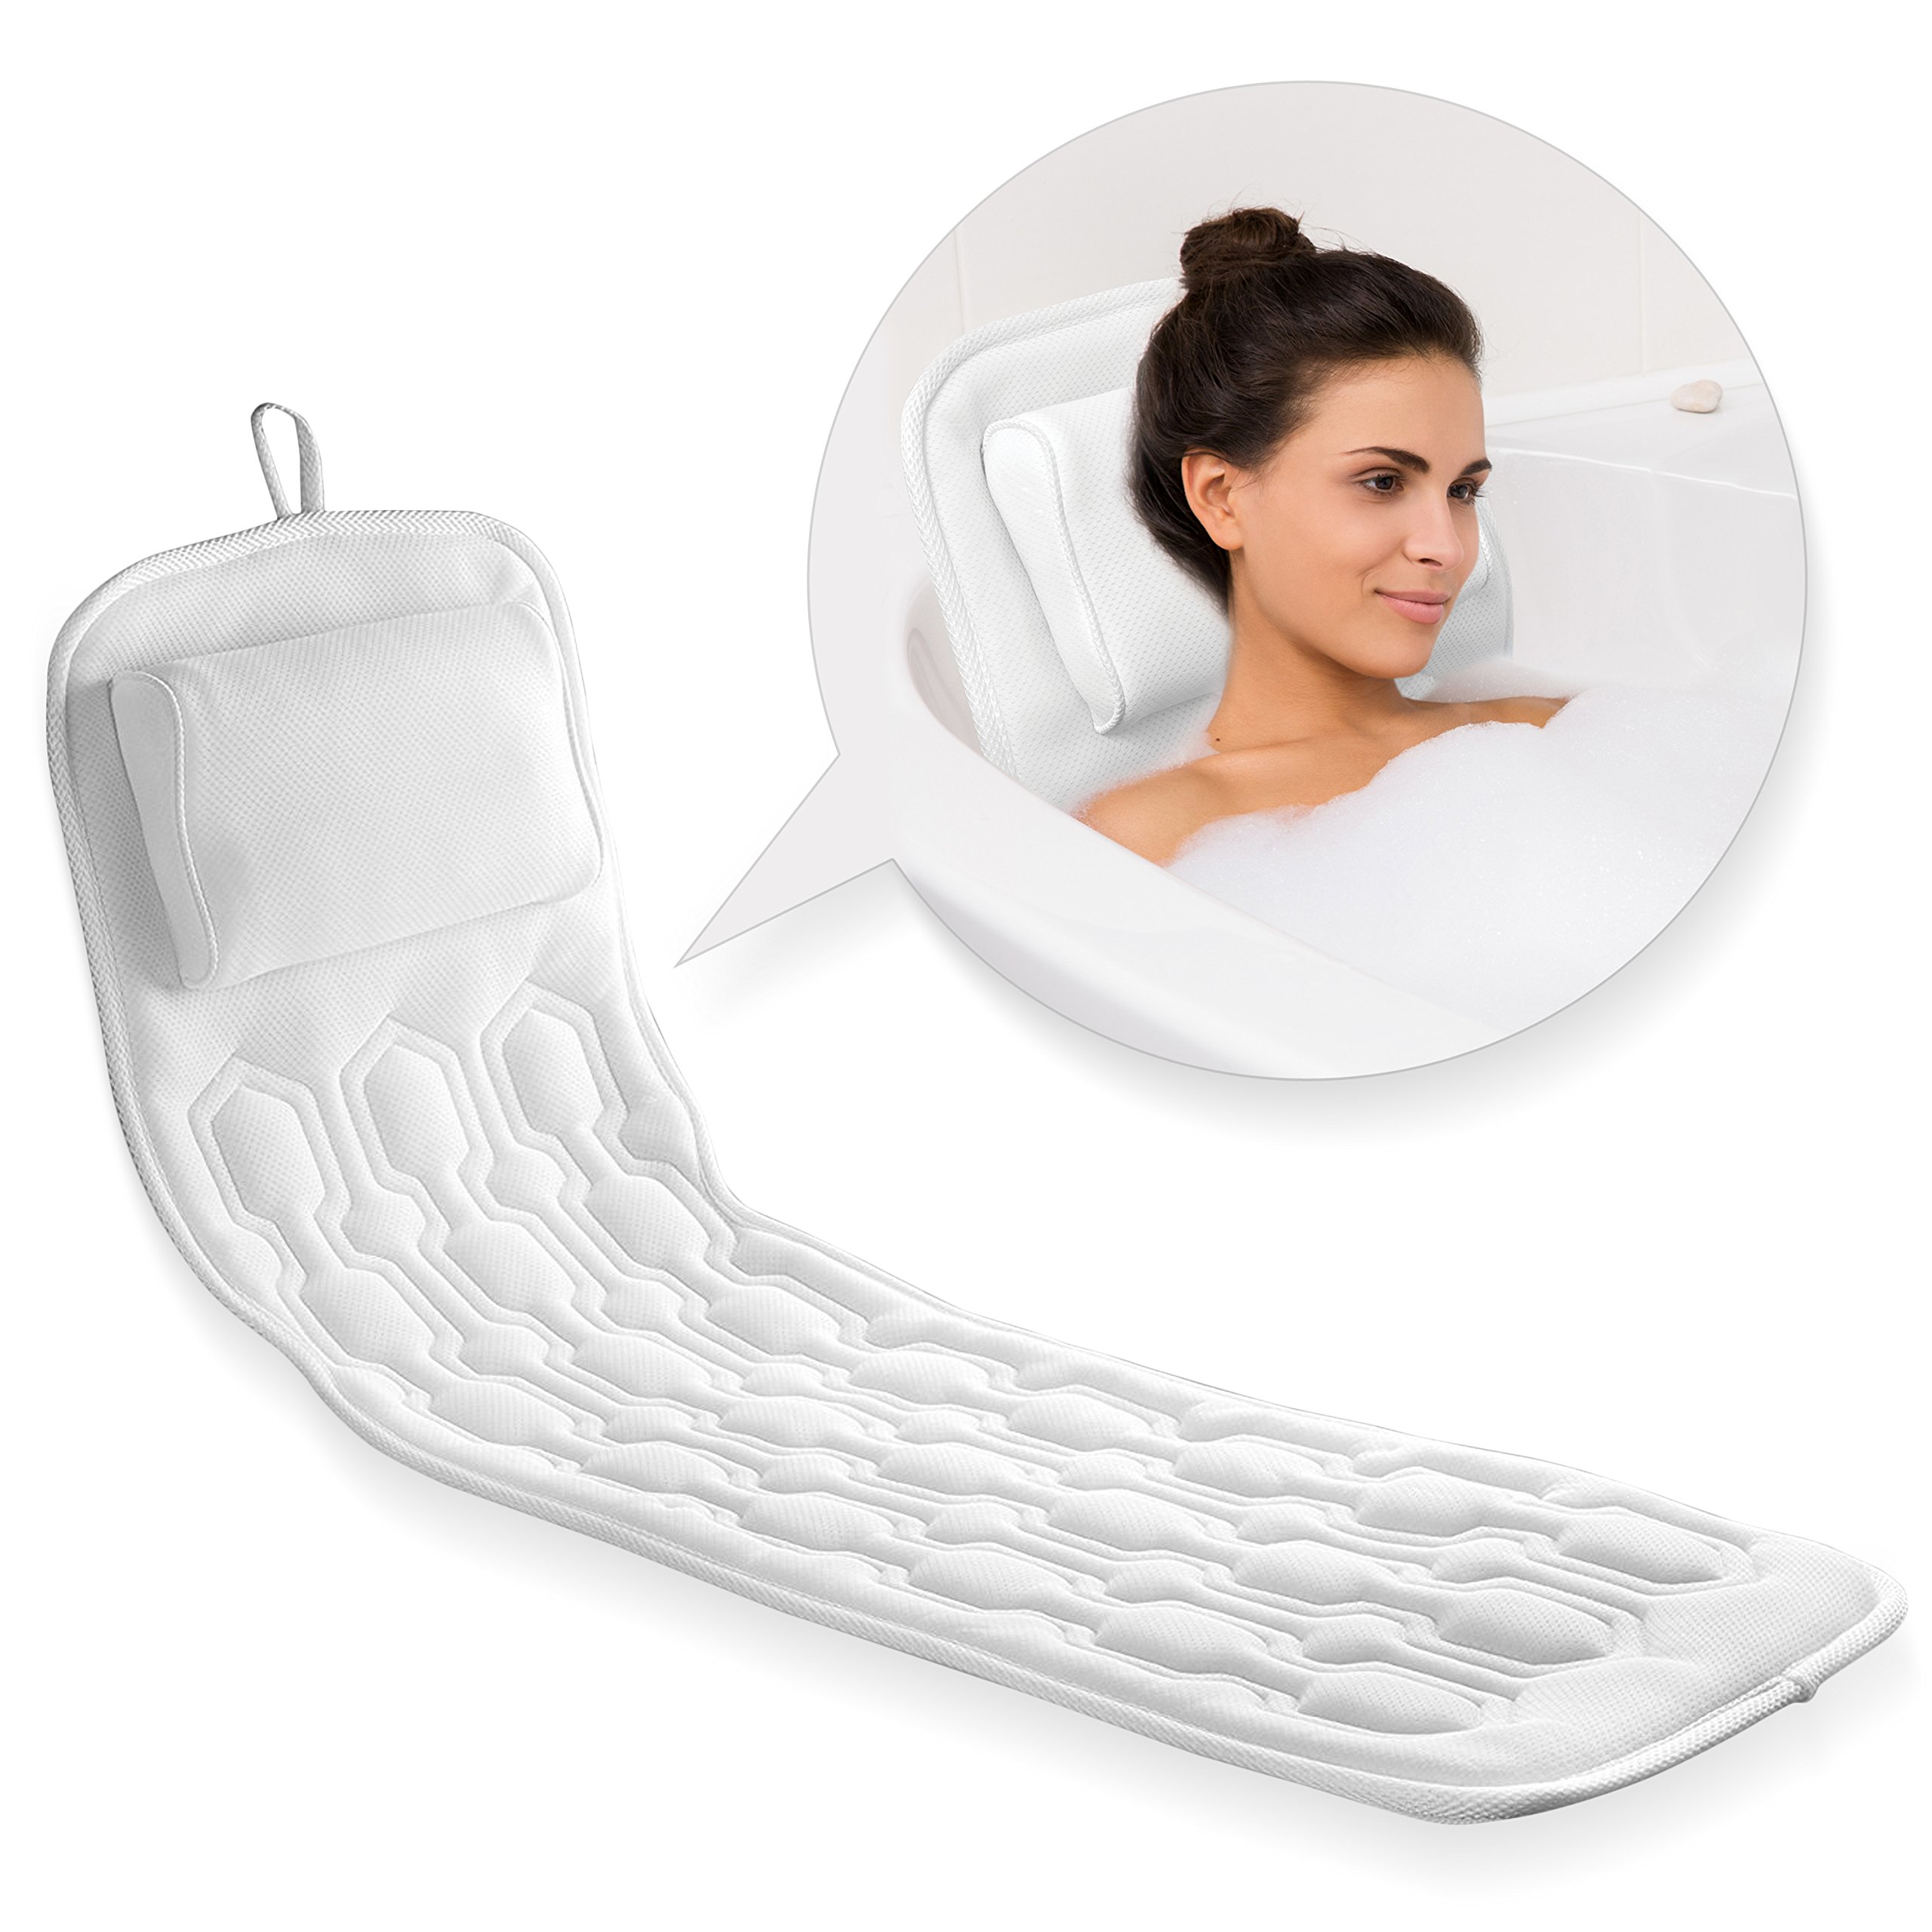 3D Mesh Spa Cushion Bath Tub Spa Pillow Non-Slip Bathtub Head Rest